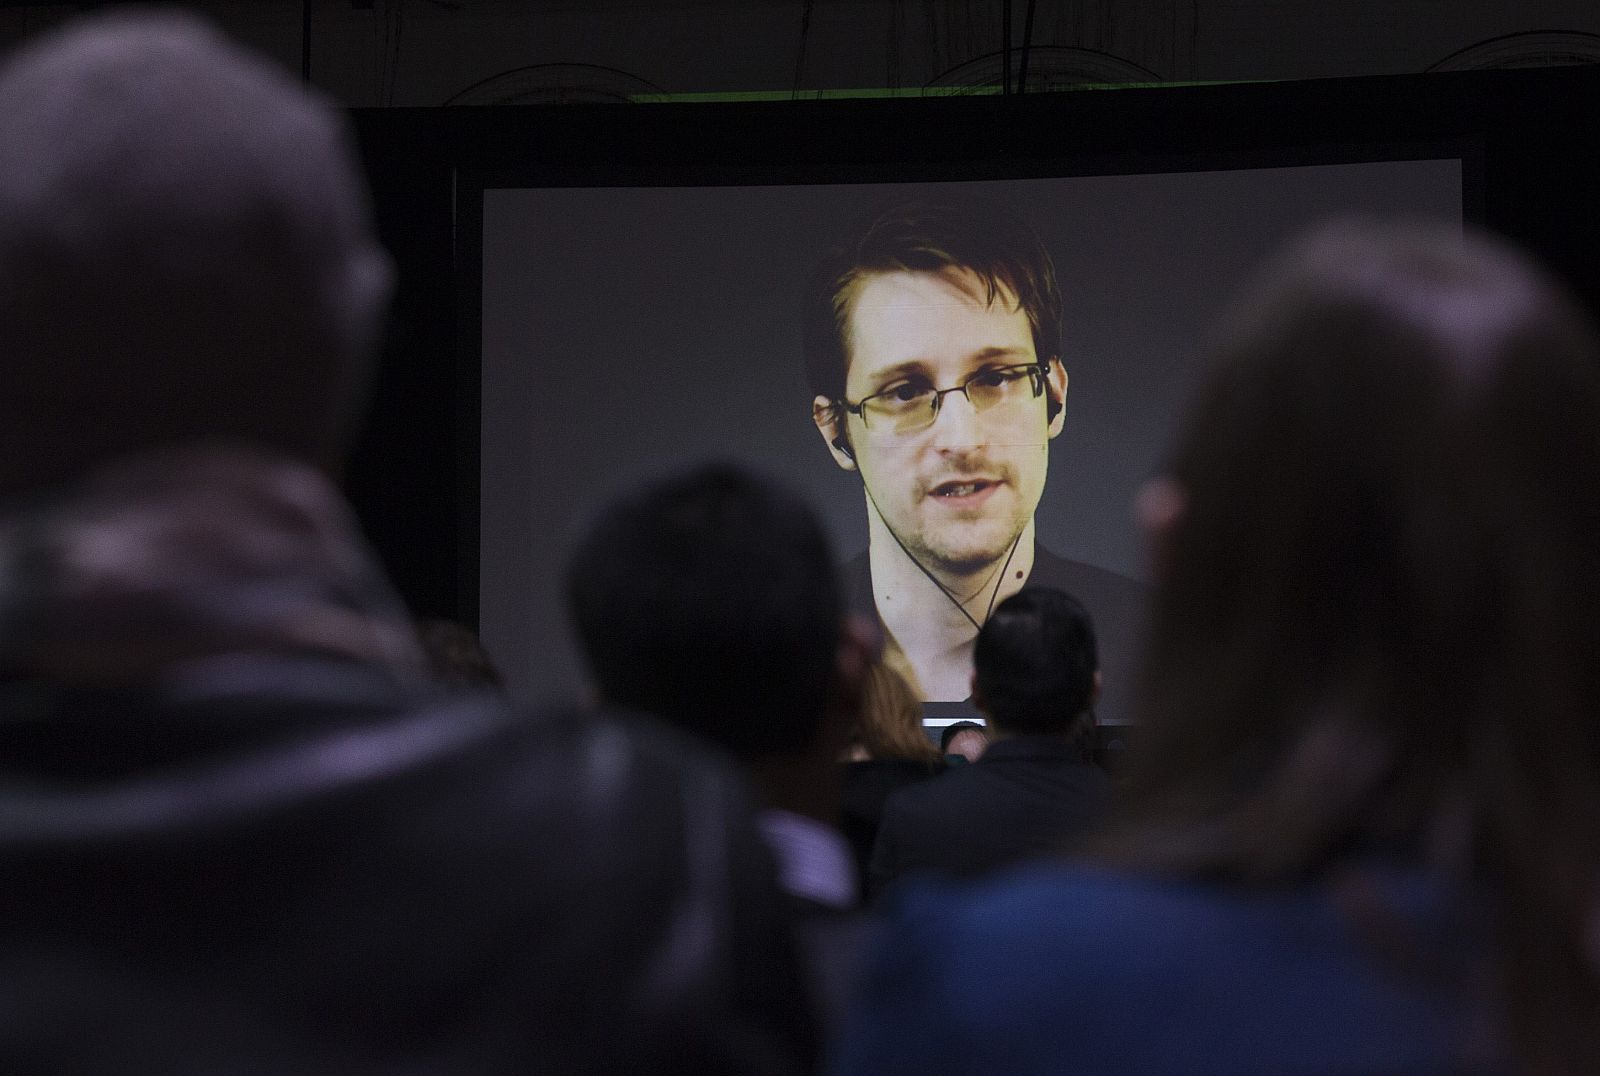 Edward Snowden residen en Rusia desde 2013, tras filtrar el espionaje masivo de EE.UU. a sus ciudadanos.